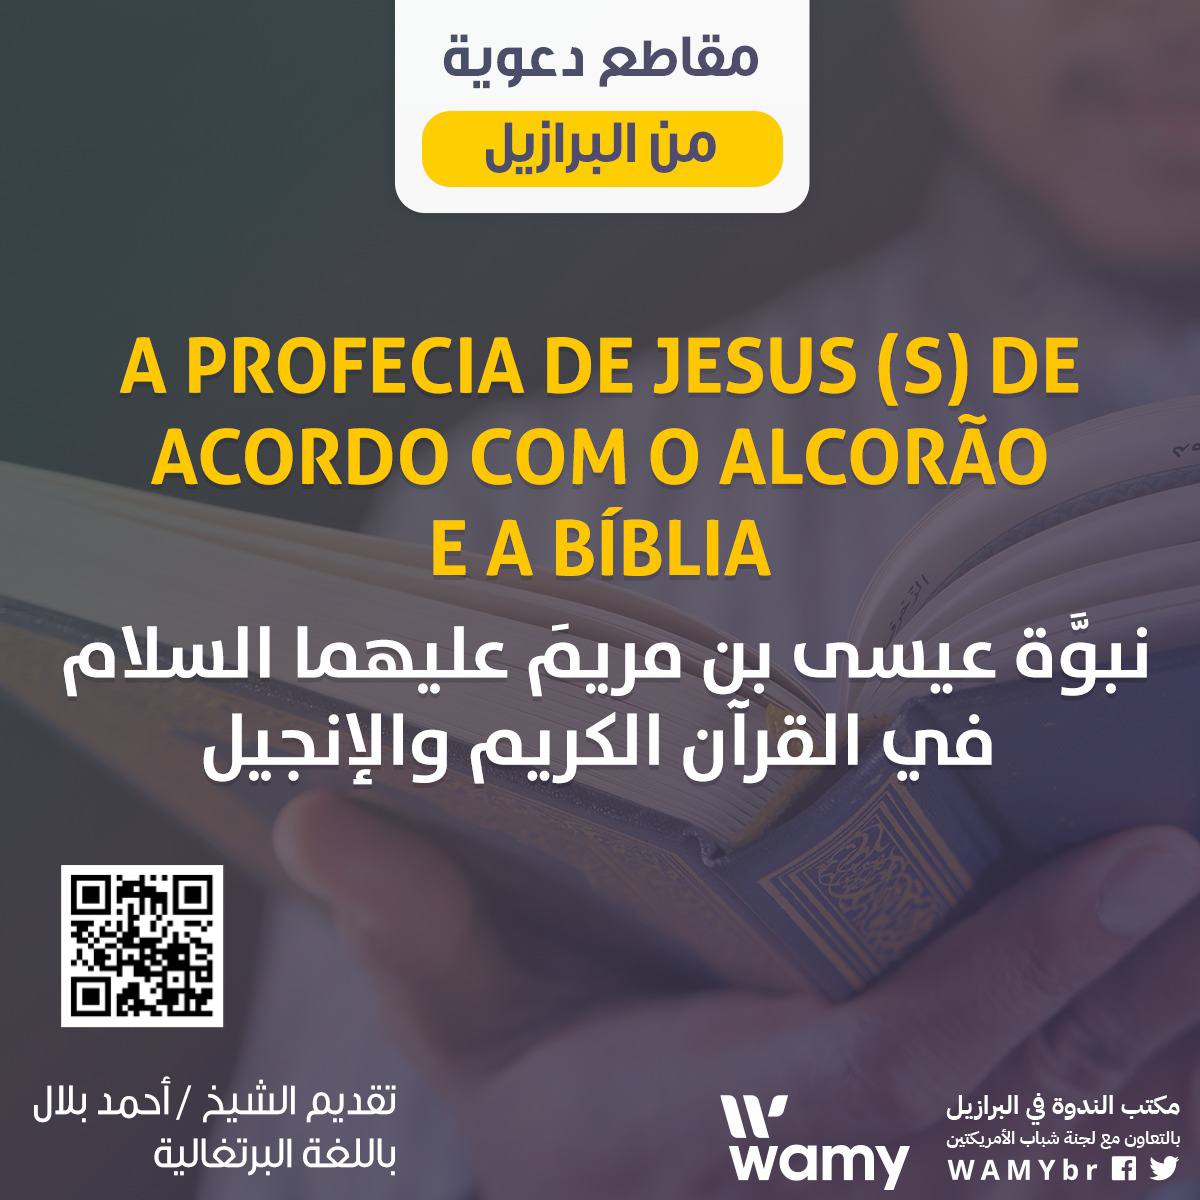 A PROFECIA DE JESUS (S) DE ACORDO COM O ALCORÃO E A BÍBLIA